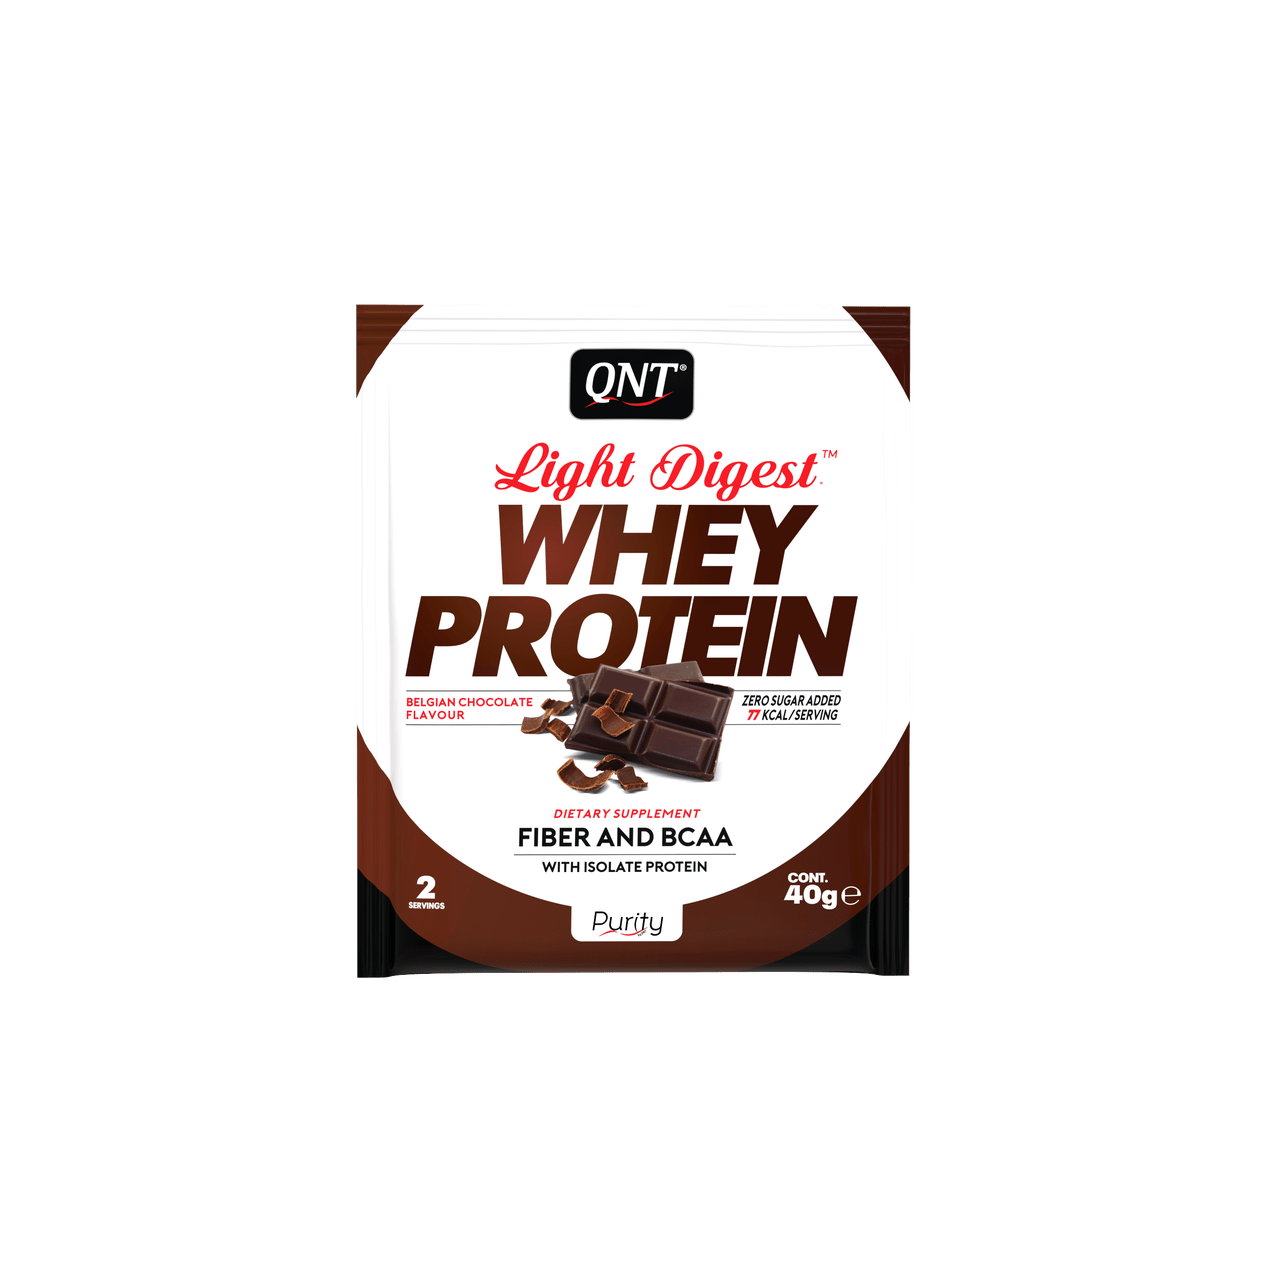 QNT Light Digest Whey Protein 500 g - Belgian Chocolate,  мл, QNT. Сывороточный протеин. Восстановление Антикатаболические свойства Сухая мышечная масса 